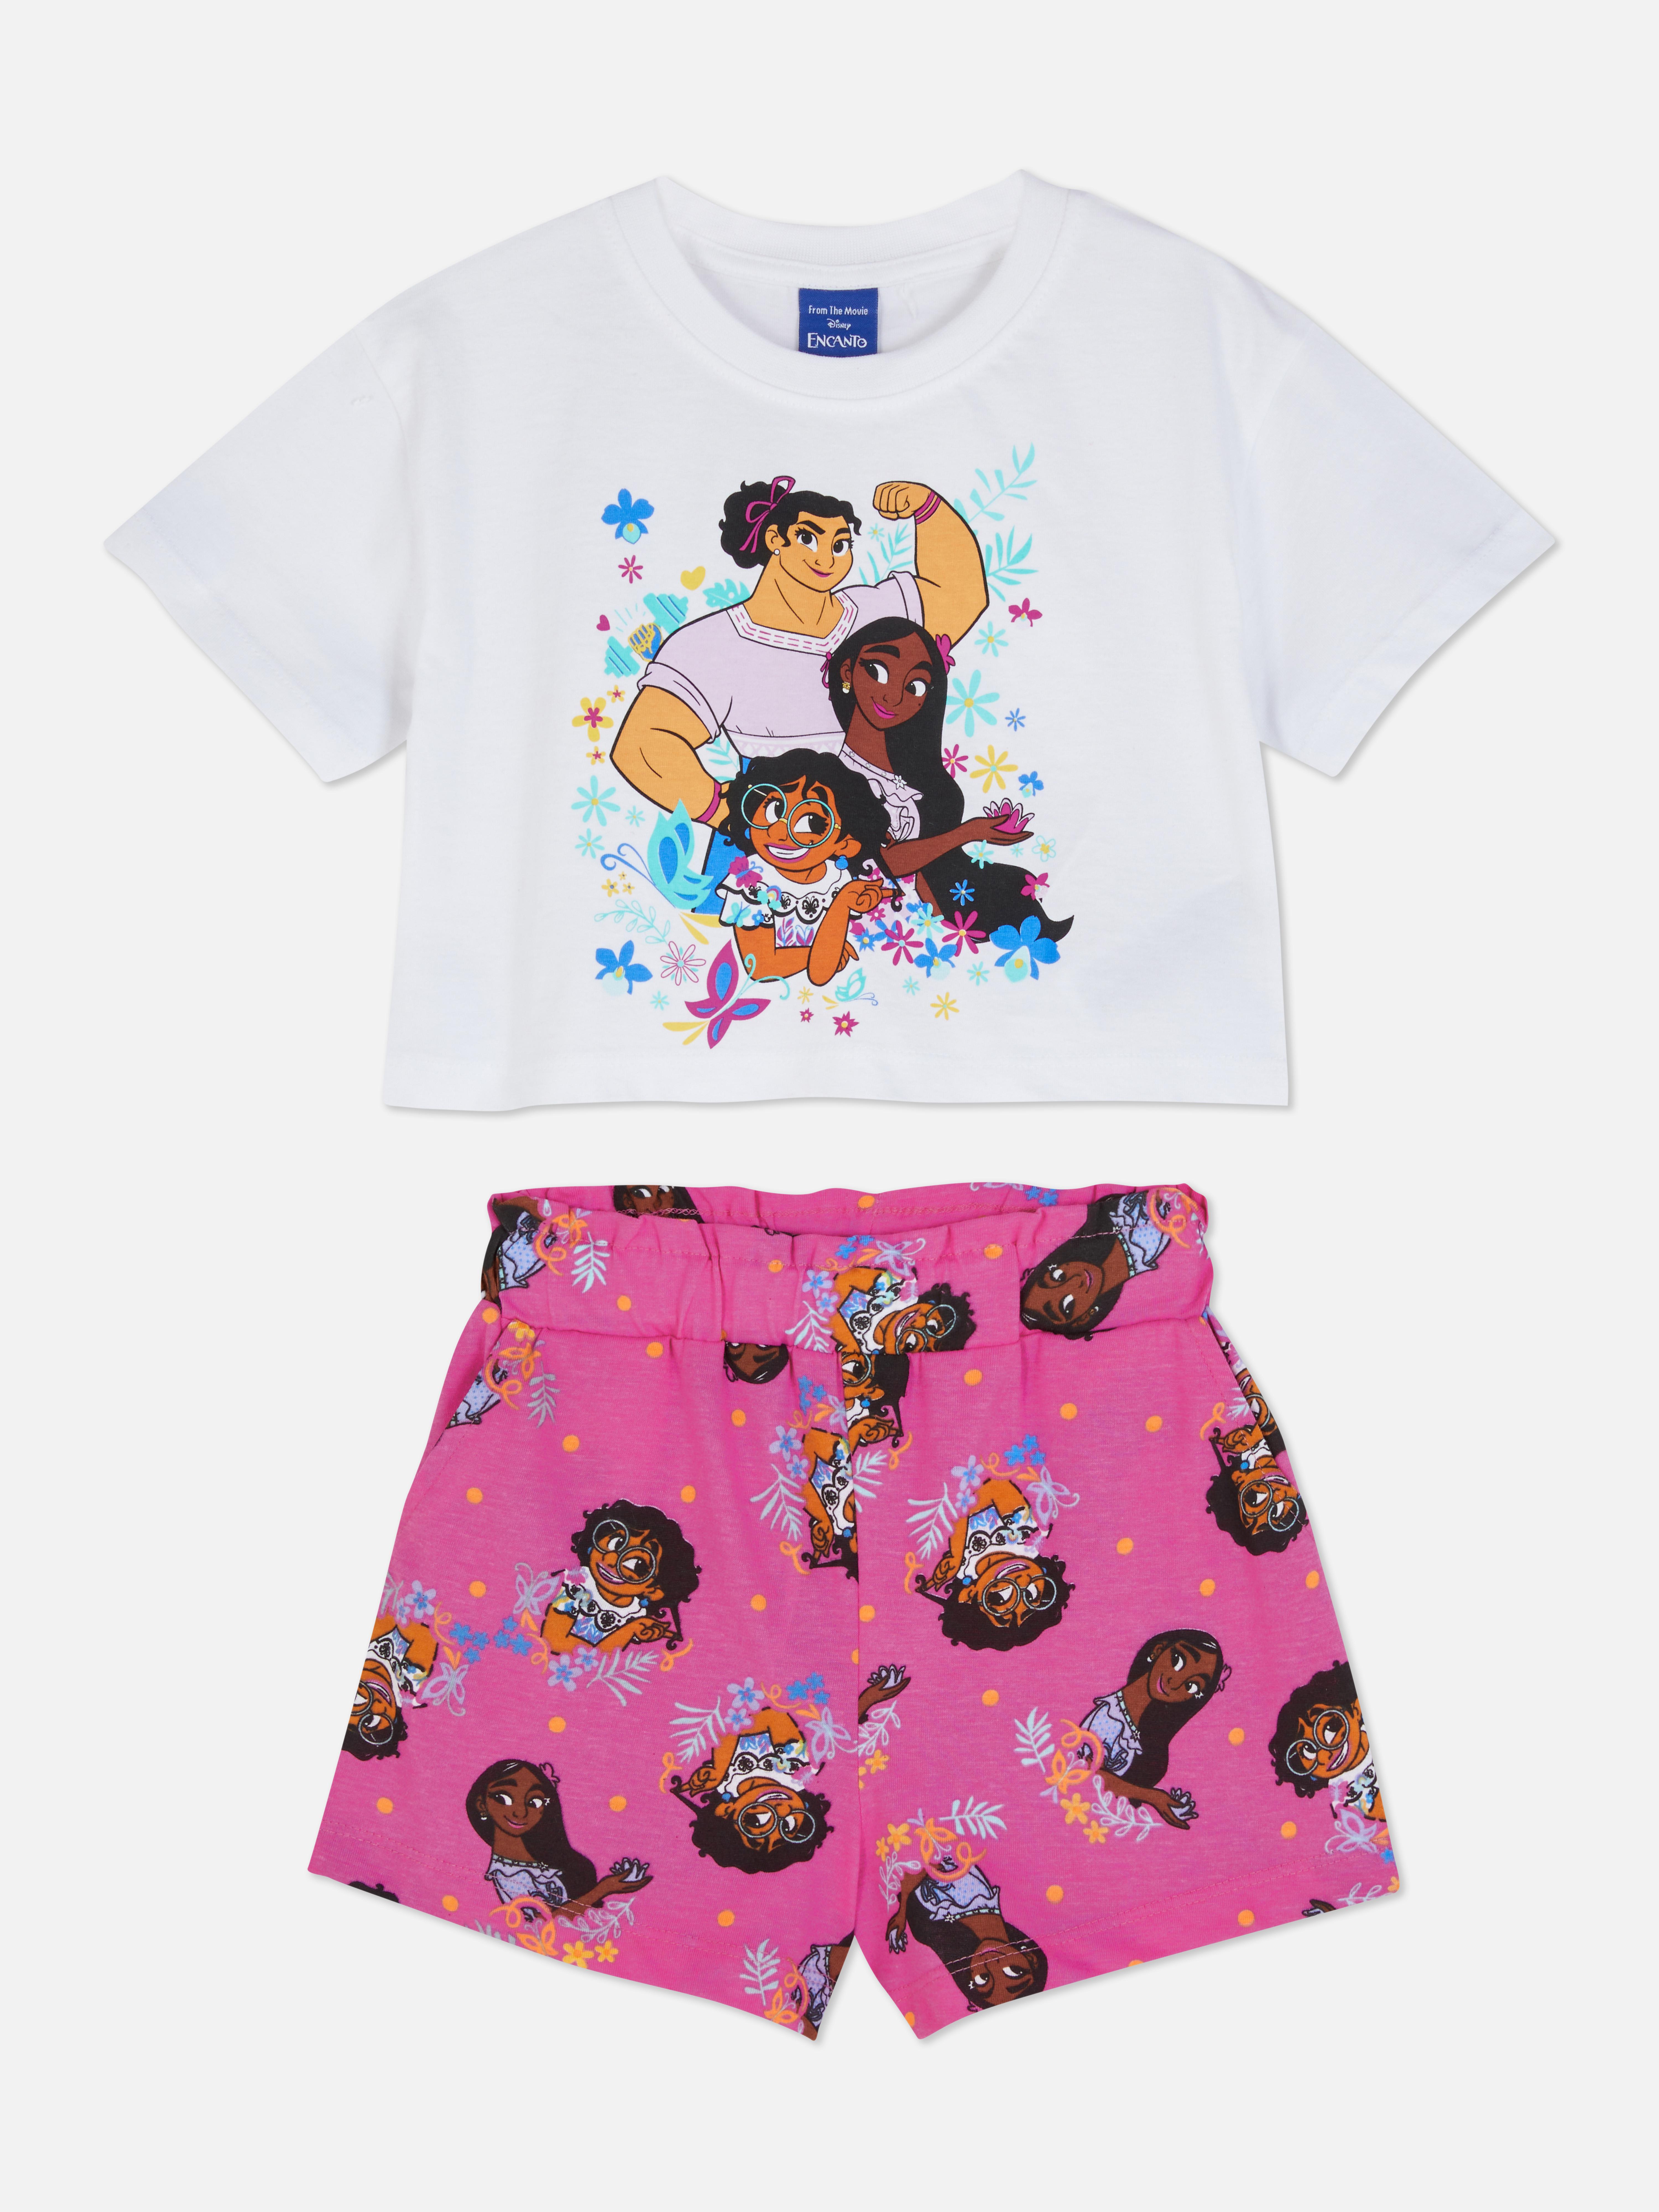 Disney's Encanto Printed T-shirt and Shorts Set